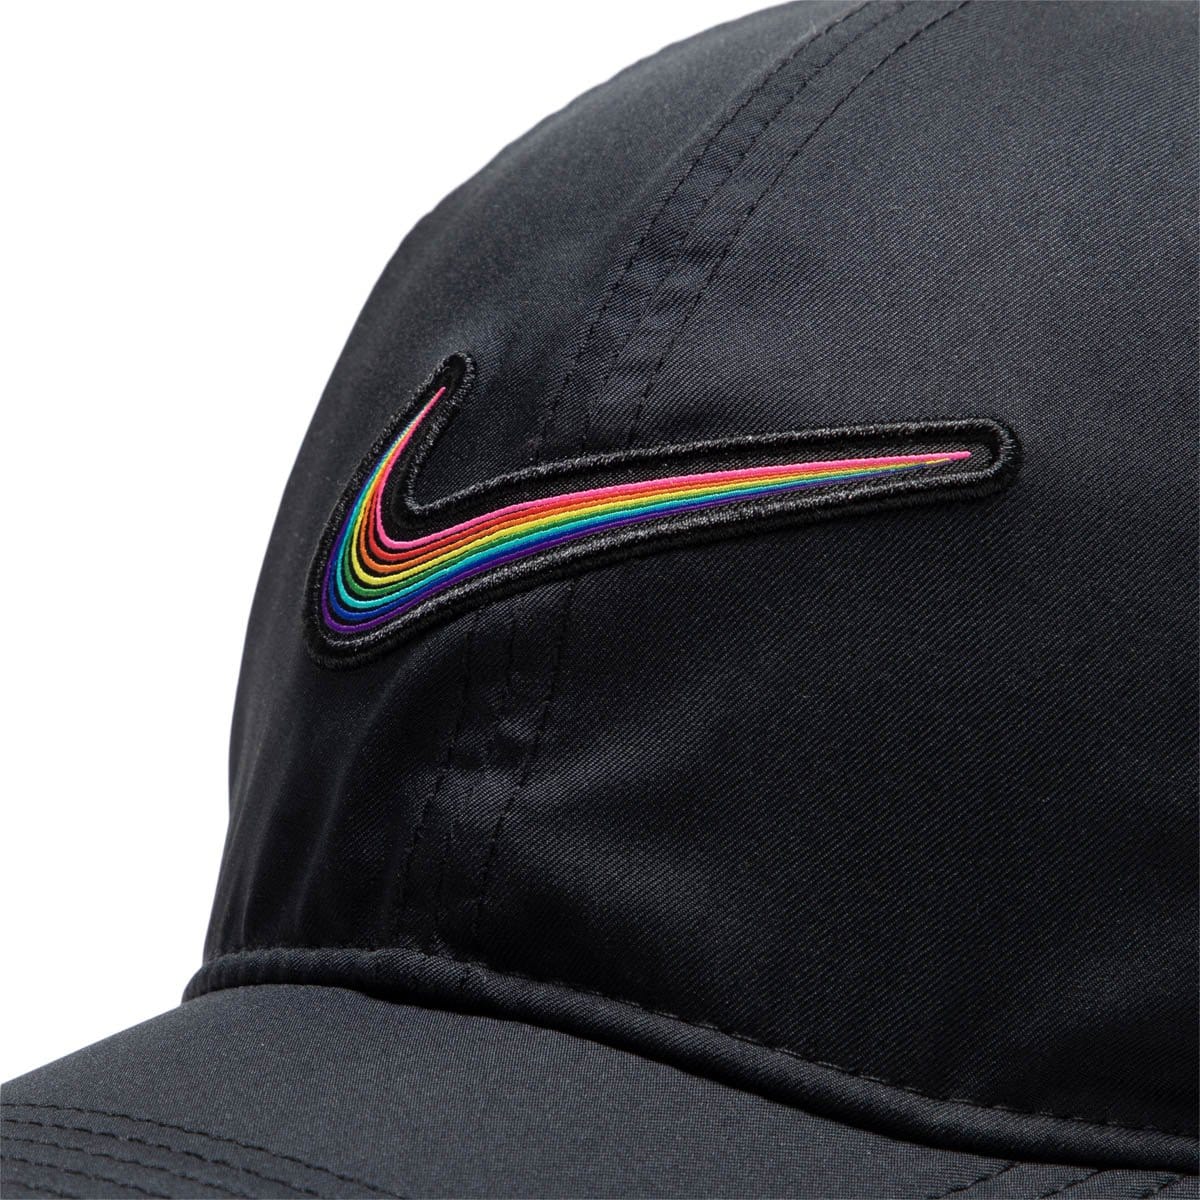 Nike Headwear BLACK / OS SPORTSWEAR BETRUE CAP